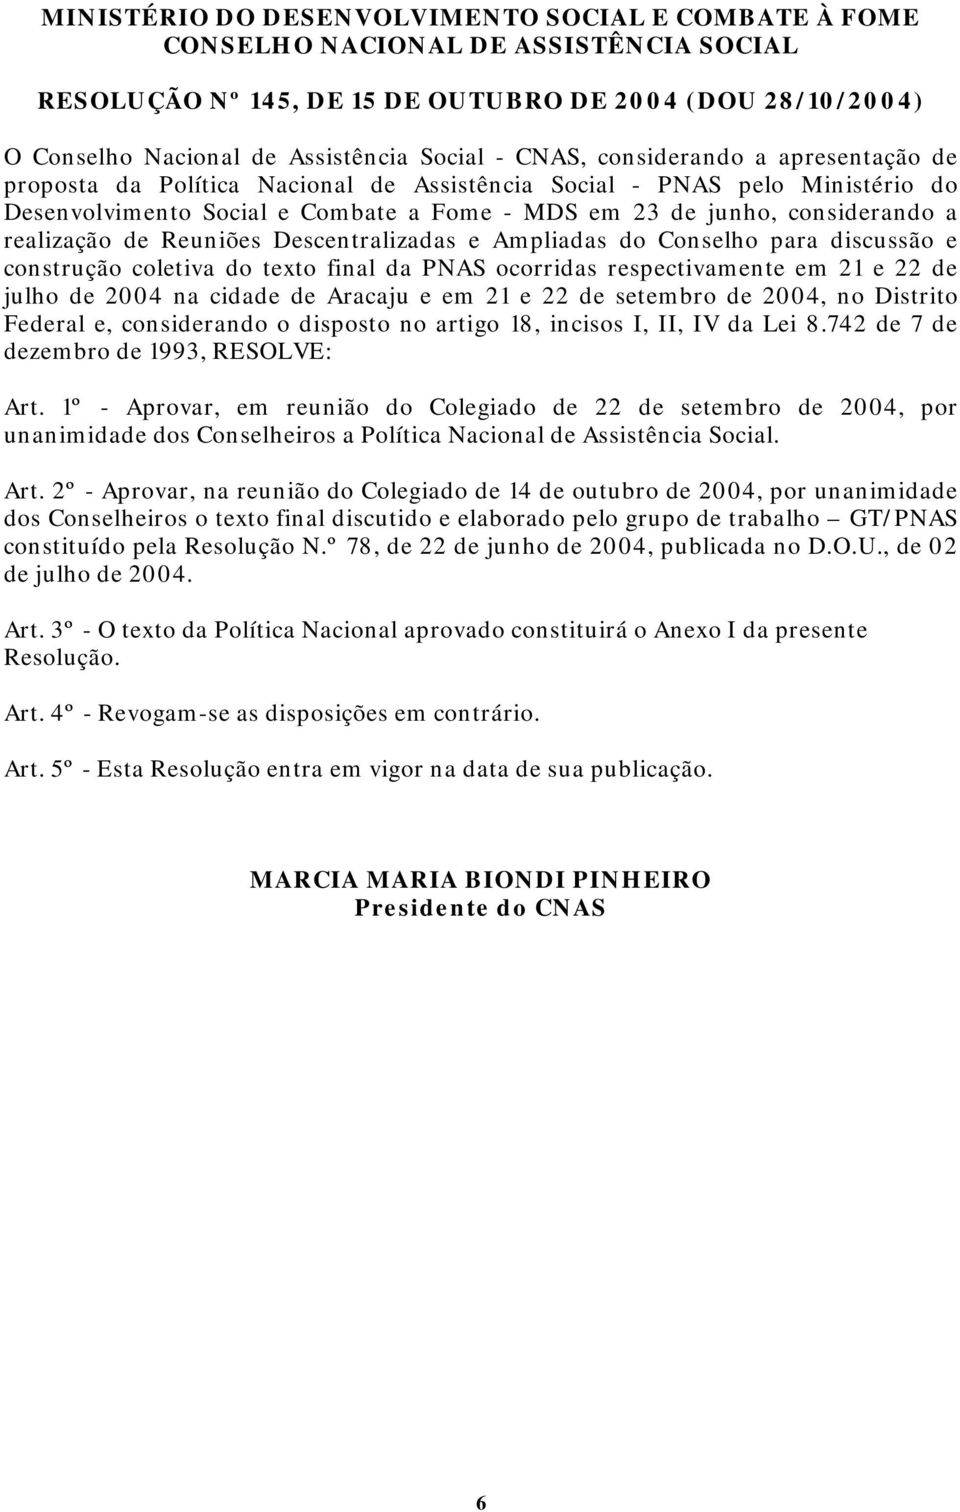 realização de Reuniões Descentralizadas e Ampliadas do Conselho para discussão e construção coletiva do texto final da PNAS ocorridas respectivamente em 21 e 22 de julho de 2004 na cidade de Aracaju